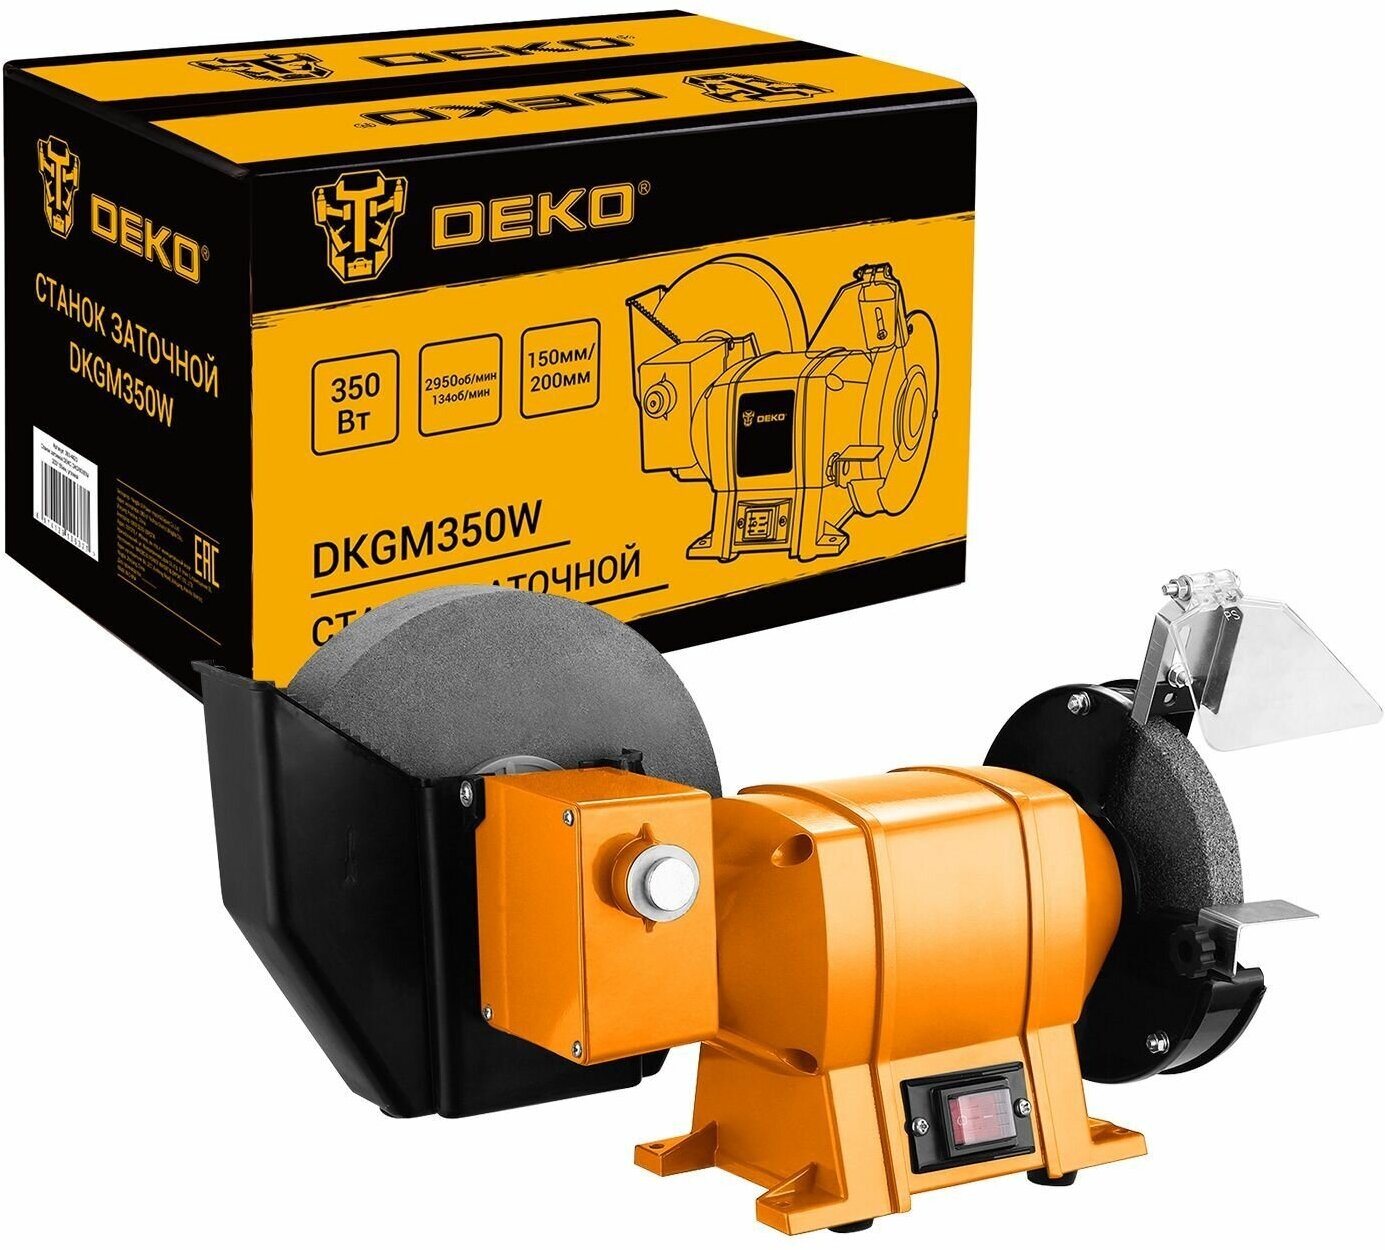 Точильный станок Deko DKGM350W, 200/150мм, угловой 063-4423